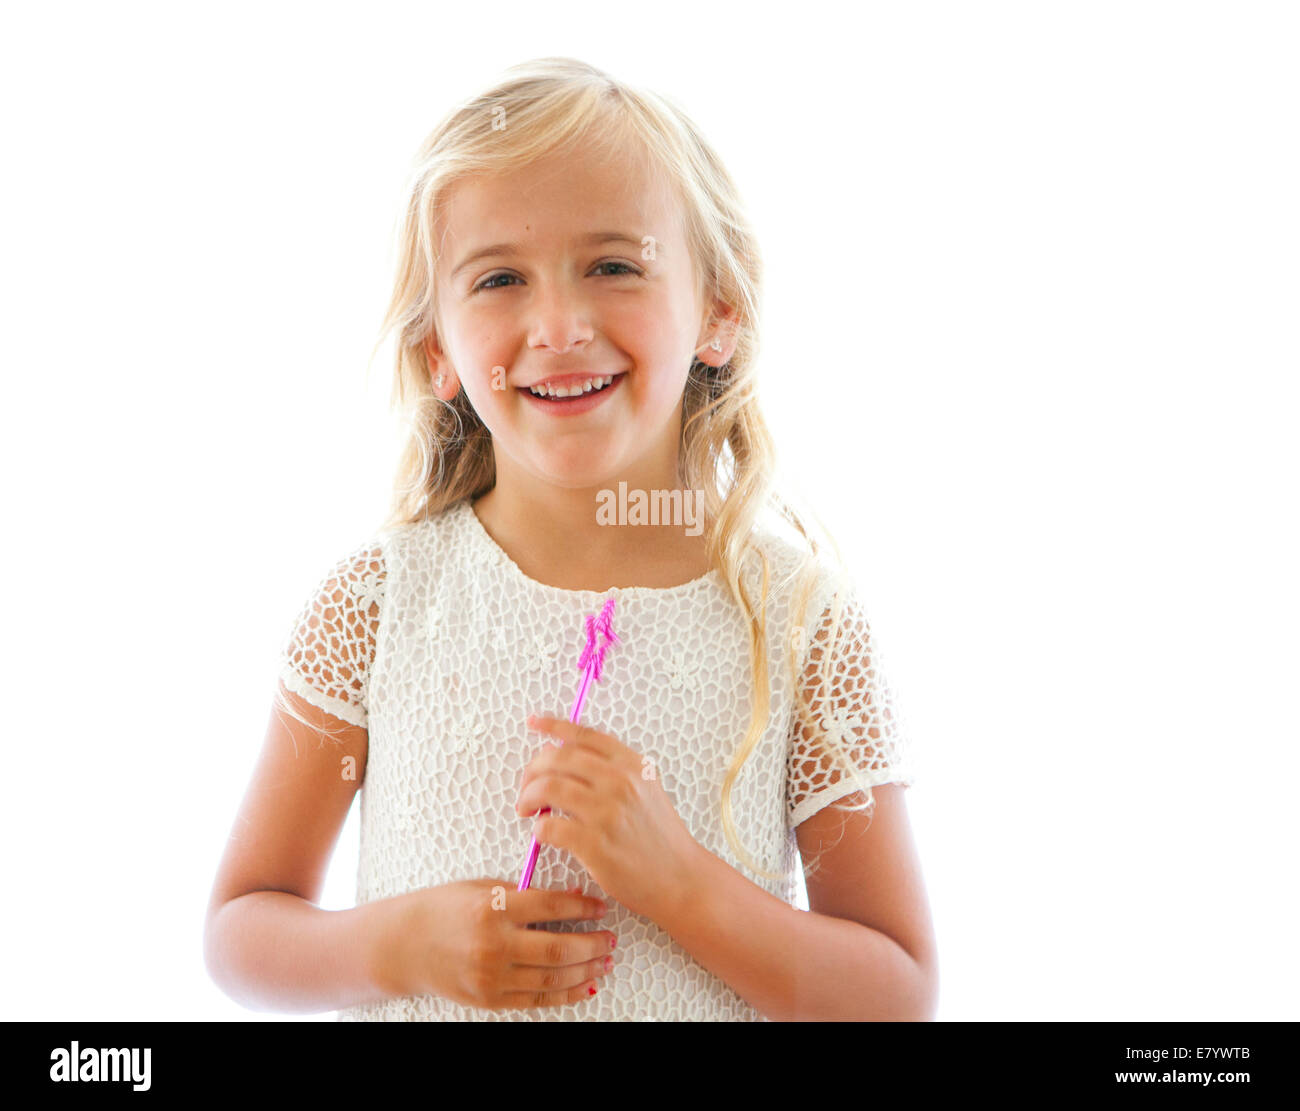 Retrato de niña sonriente (4-5 años) sosteniendo la varita mágica Foto de stock